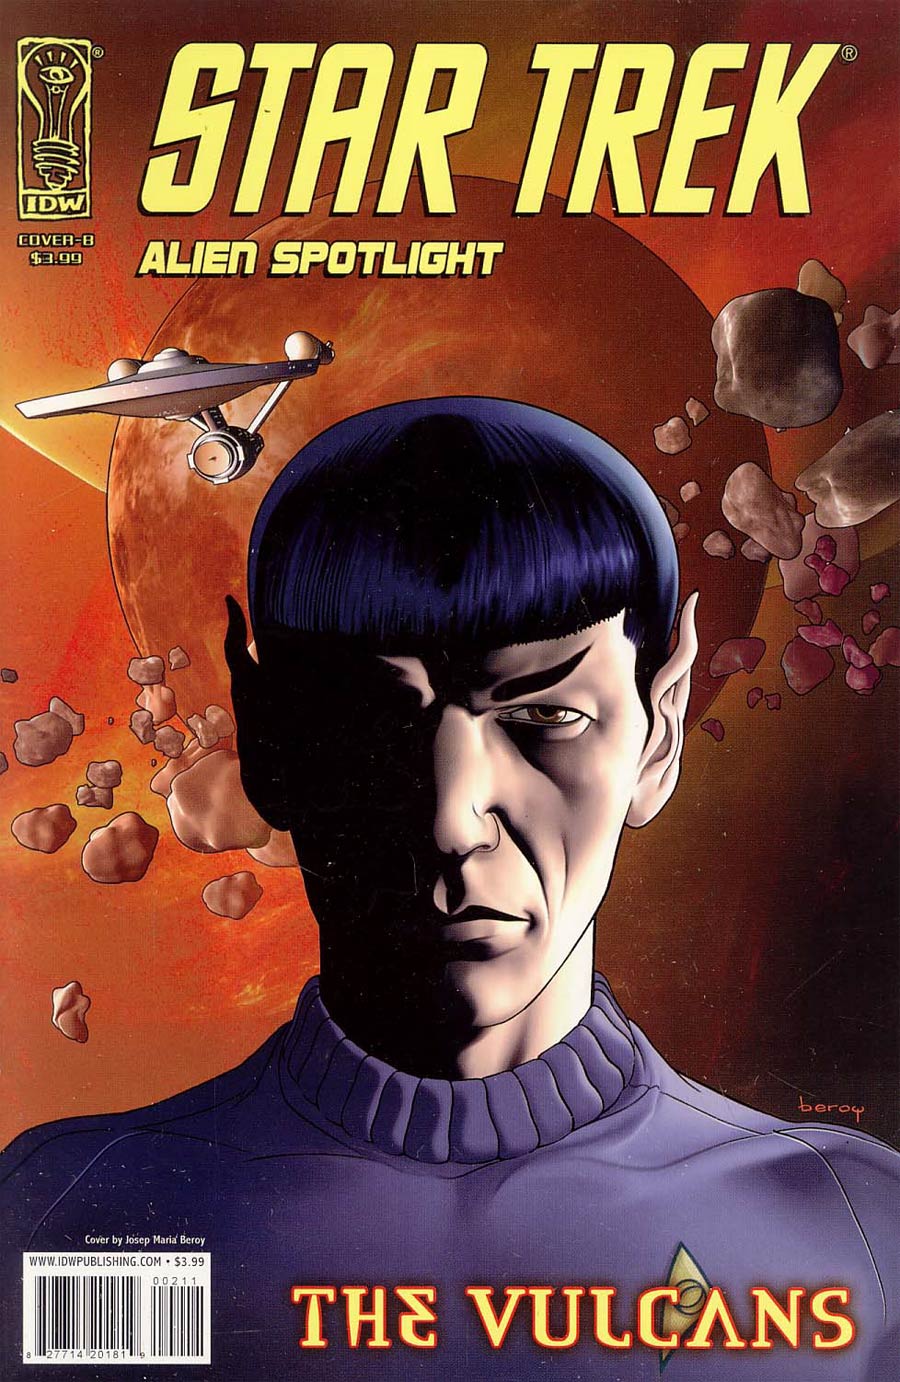 Star Trek Aliens Spotlight Vulcans Regular Josep Maria Beroy Cover